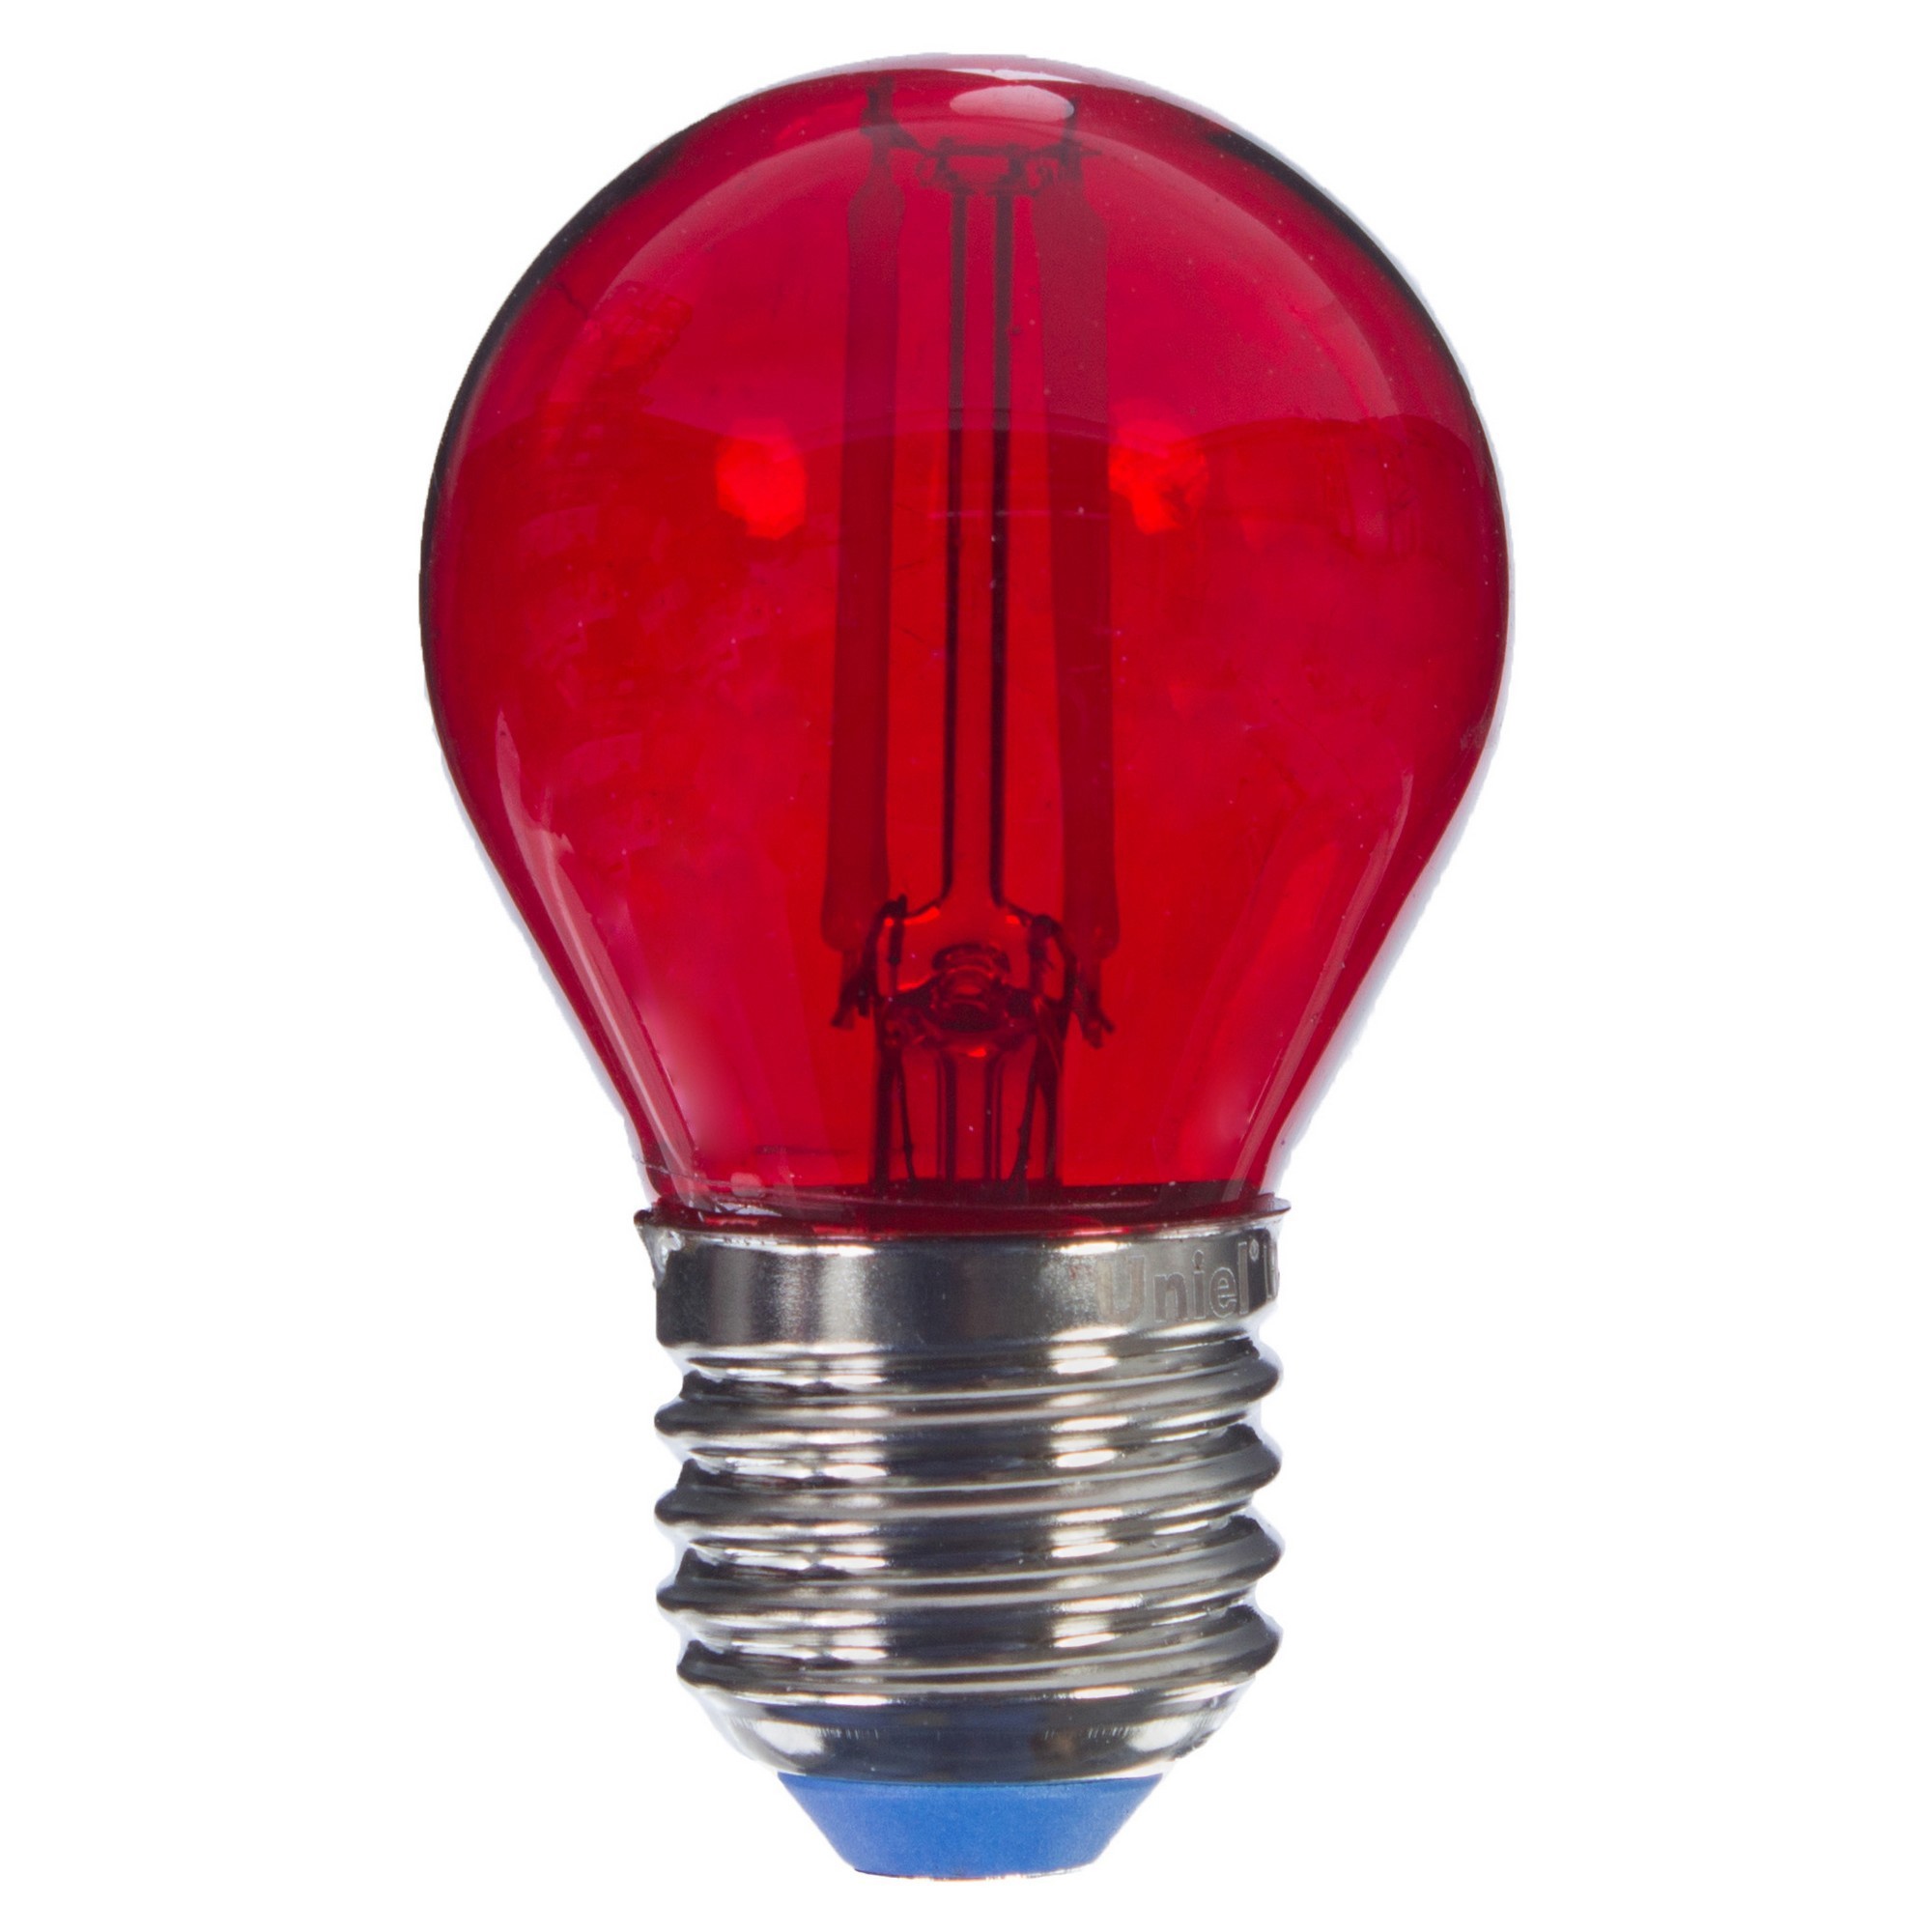 Лампочка 1 красный цвет. Лампа светодиодная Uniel Color шар e27 5 Вт свет красный. Лампа красная TDM led e27. Лампа светодиодная Uniel Color шар e27 5 Вт свет синий. Лампа светодиодная led 1вт е27 красный (шар) (lb-37).